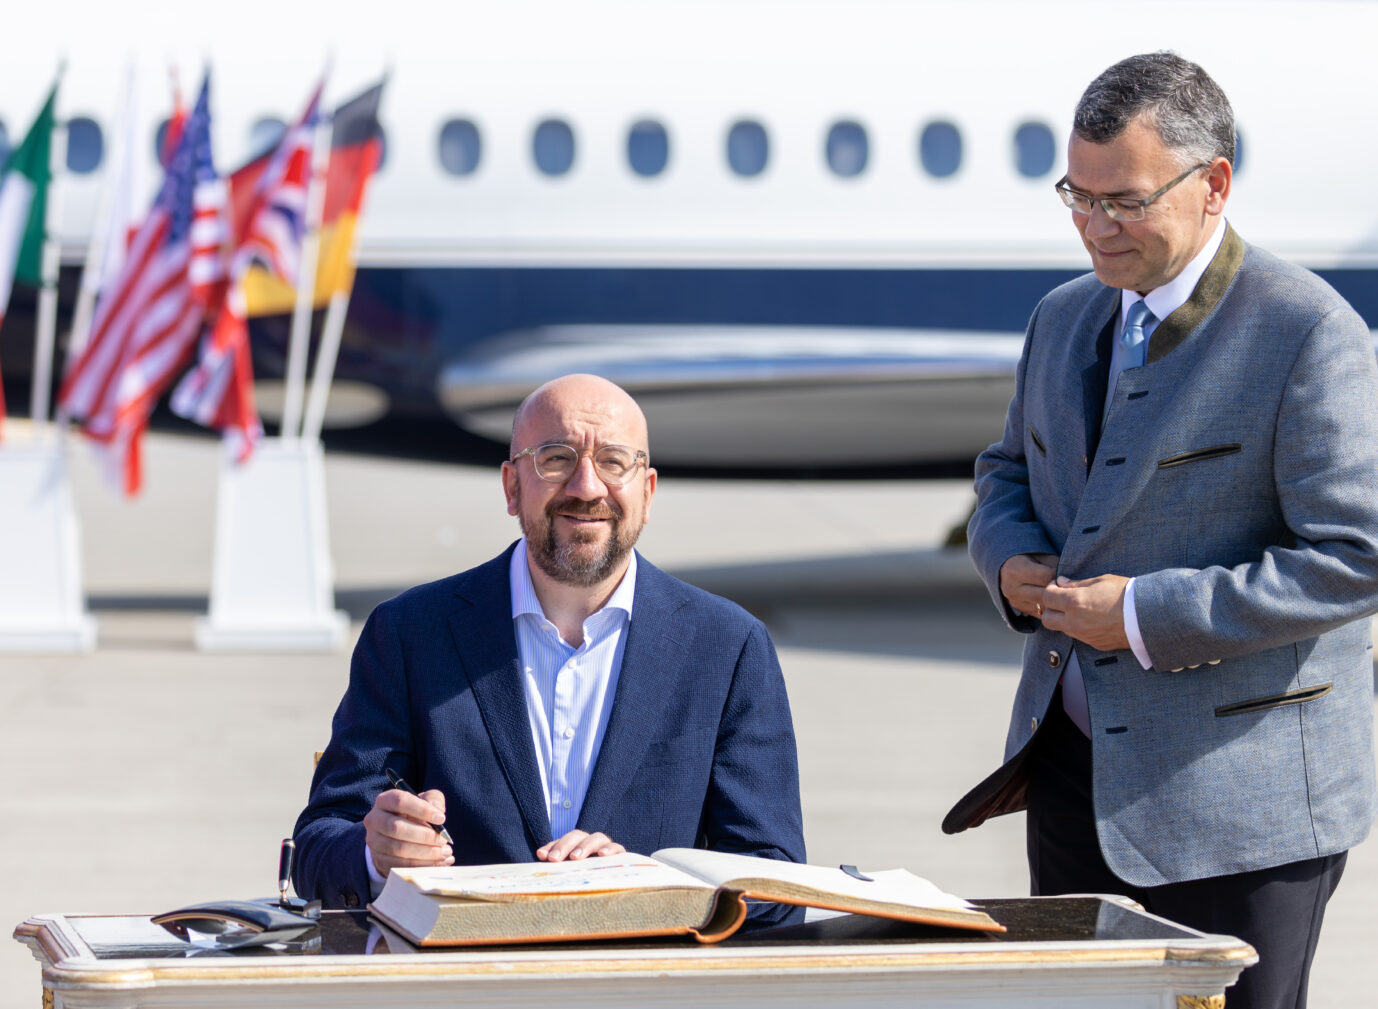 EU-Ratspräsident Charles Michel (links) wird am Flughafen München empfangen: Der EU-Spitzenfunktionär reist gerne mit dem Privatjet.